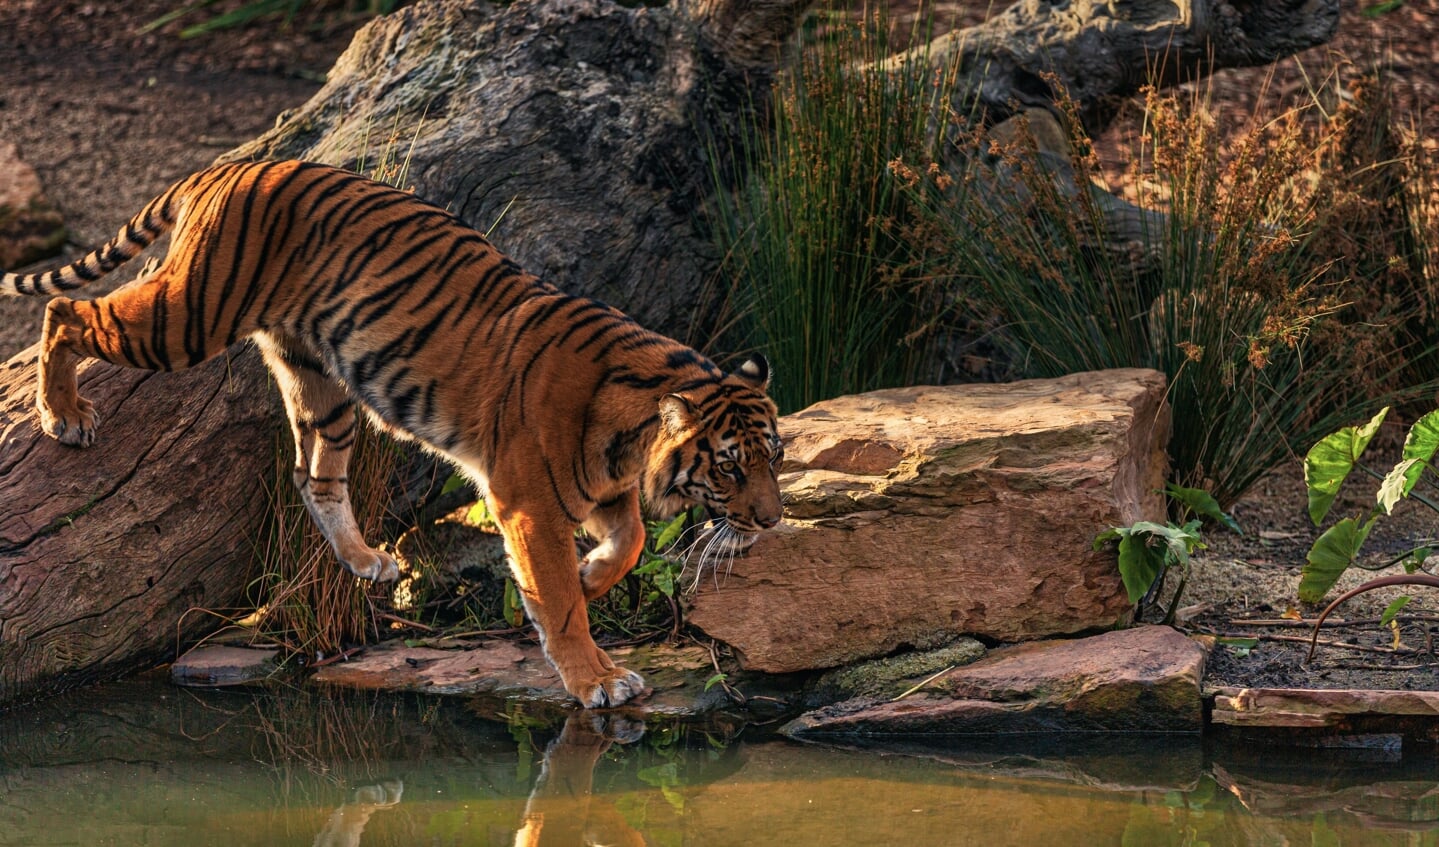 Pexels: foto door Robert Stokoe: https://www.pexels.com/nl-nl/foto/foto-van-bengaalse-tijger-die-dichtbij-waterlichaam-loopt-2668605/